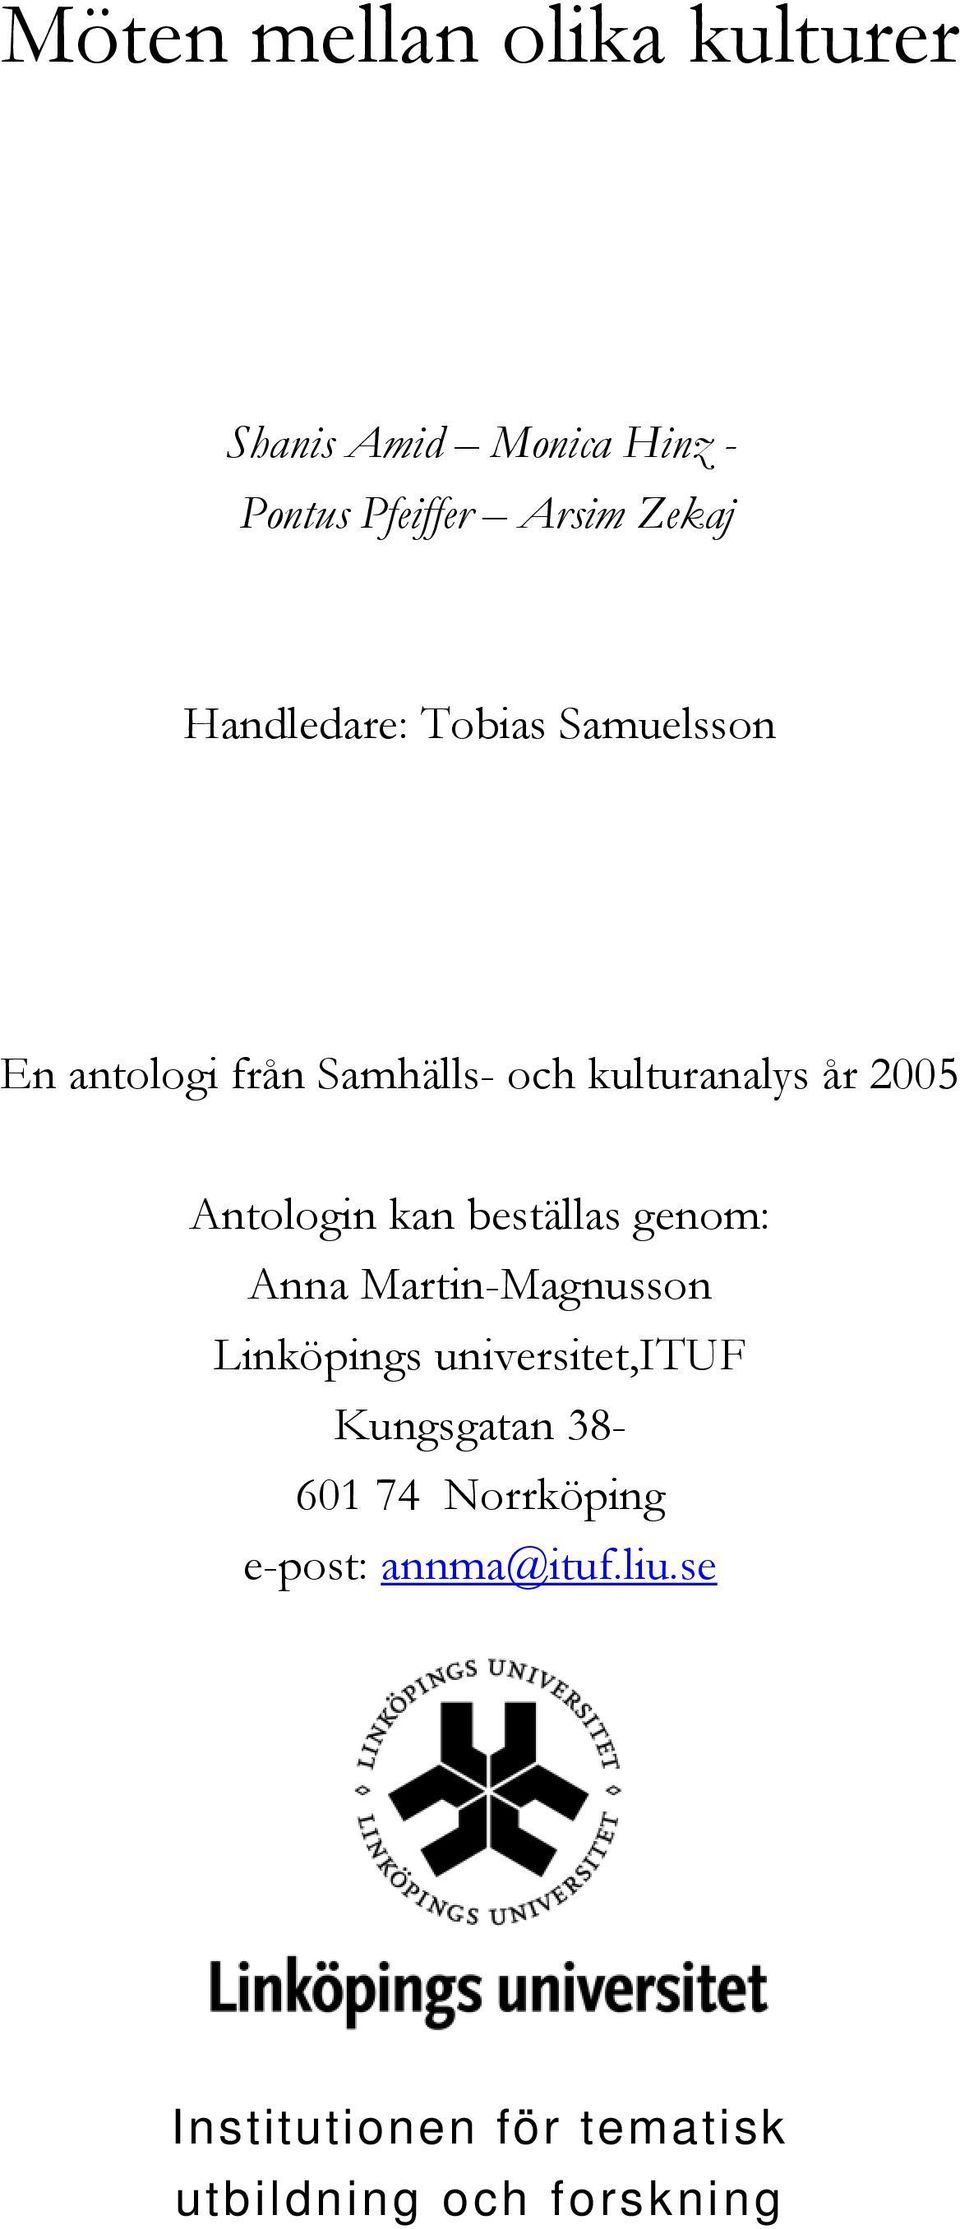 Antologin kan beställas genom: Anna Martin-Magnusson Linköpings universitet,ituf